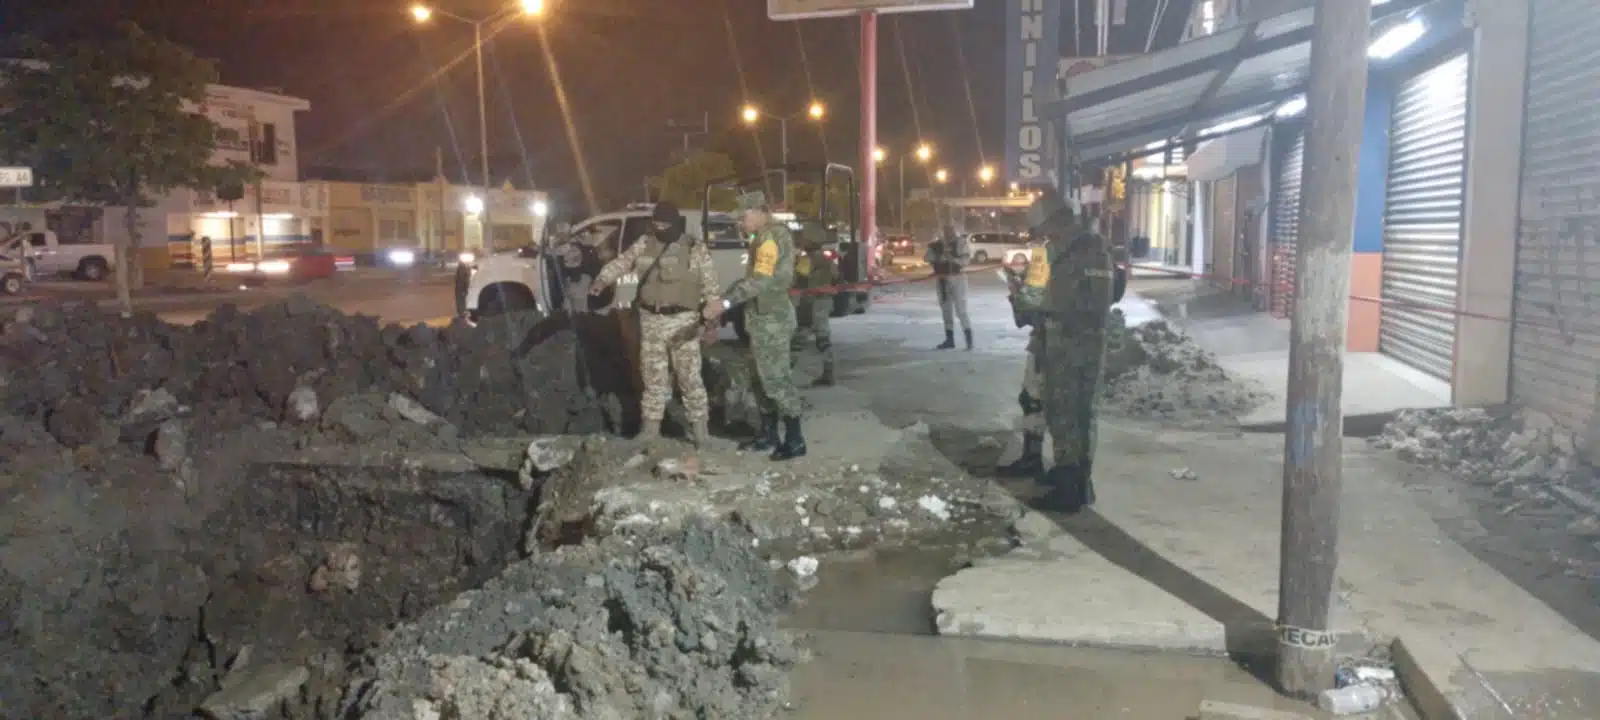 Personal de Pemex, resguardados por elementos de seguridad de la misma paraestatal, del Ejército y Guardia Nacional, acudió al lugar.